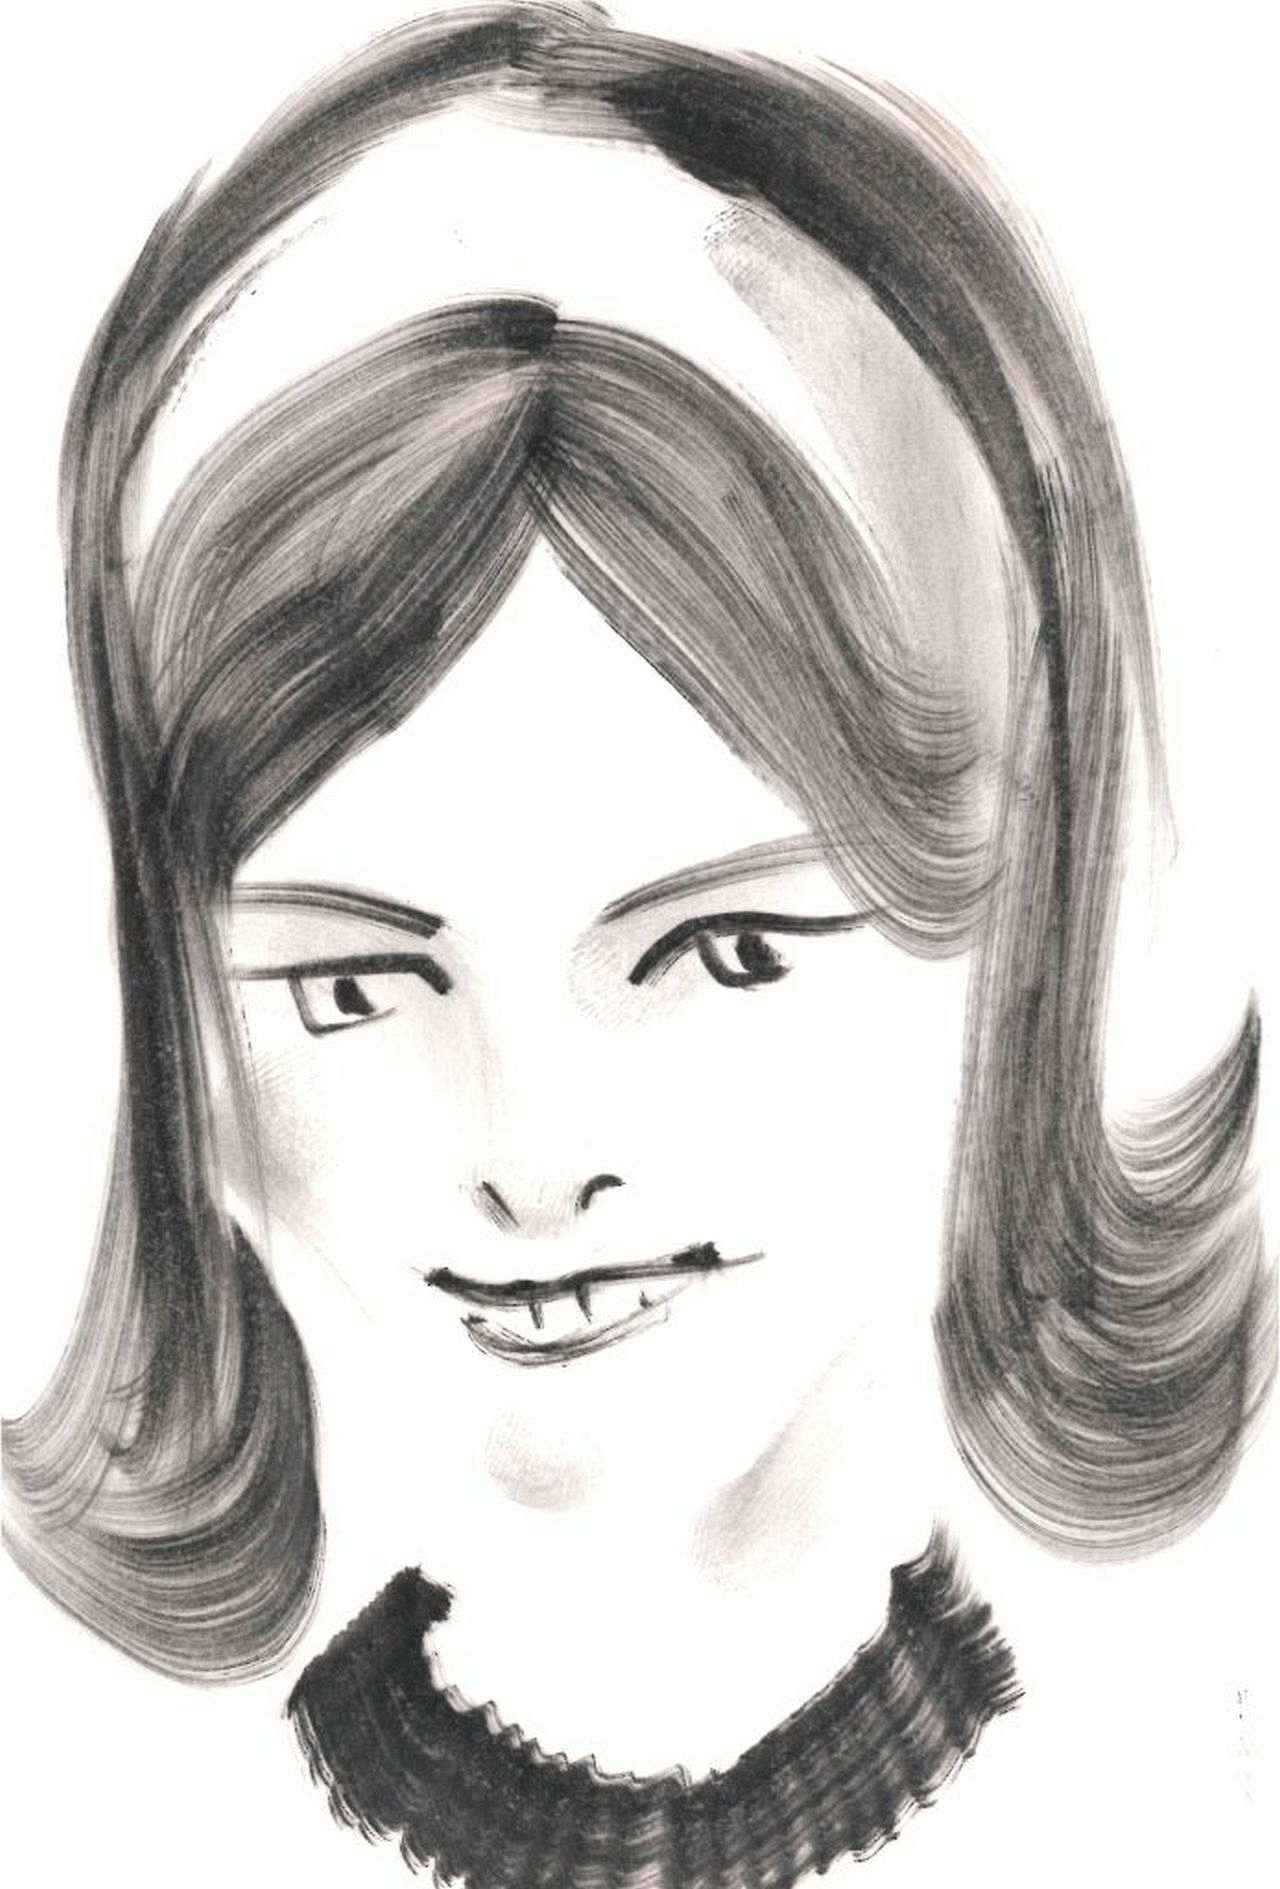 Kohlezeichnung, schwarz-weiß. Gezeichnet ist in abstrakter Form der Kopf einer Frau mit schulterlangen Haaren. Ein Haarreif und der Kragen eines Oberteils sind angedeutet.